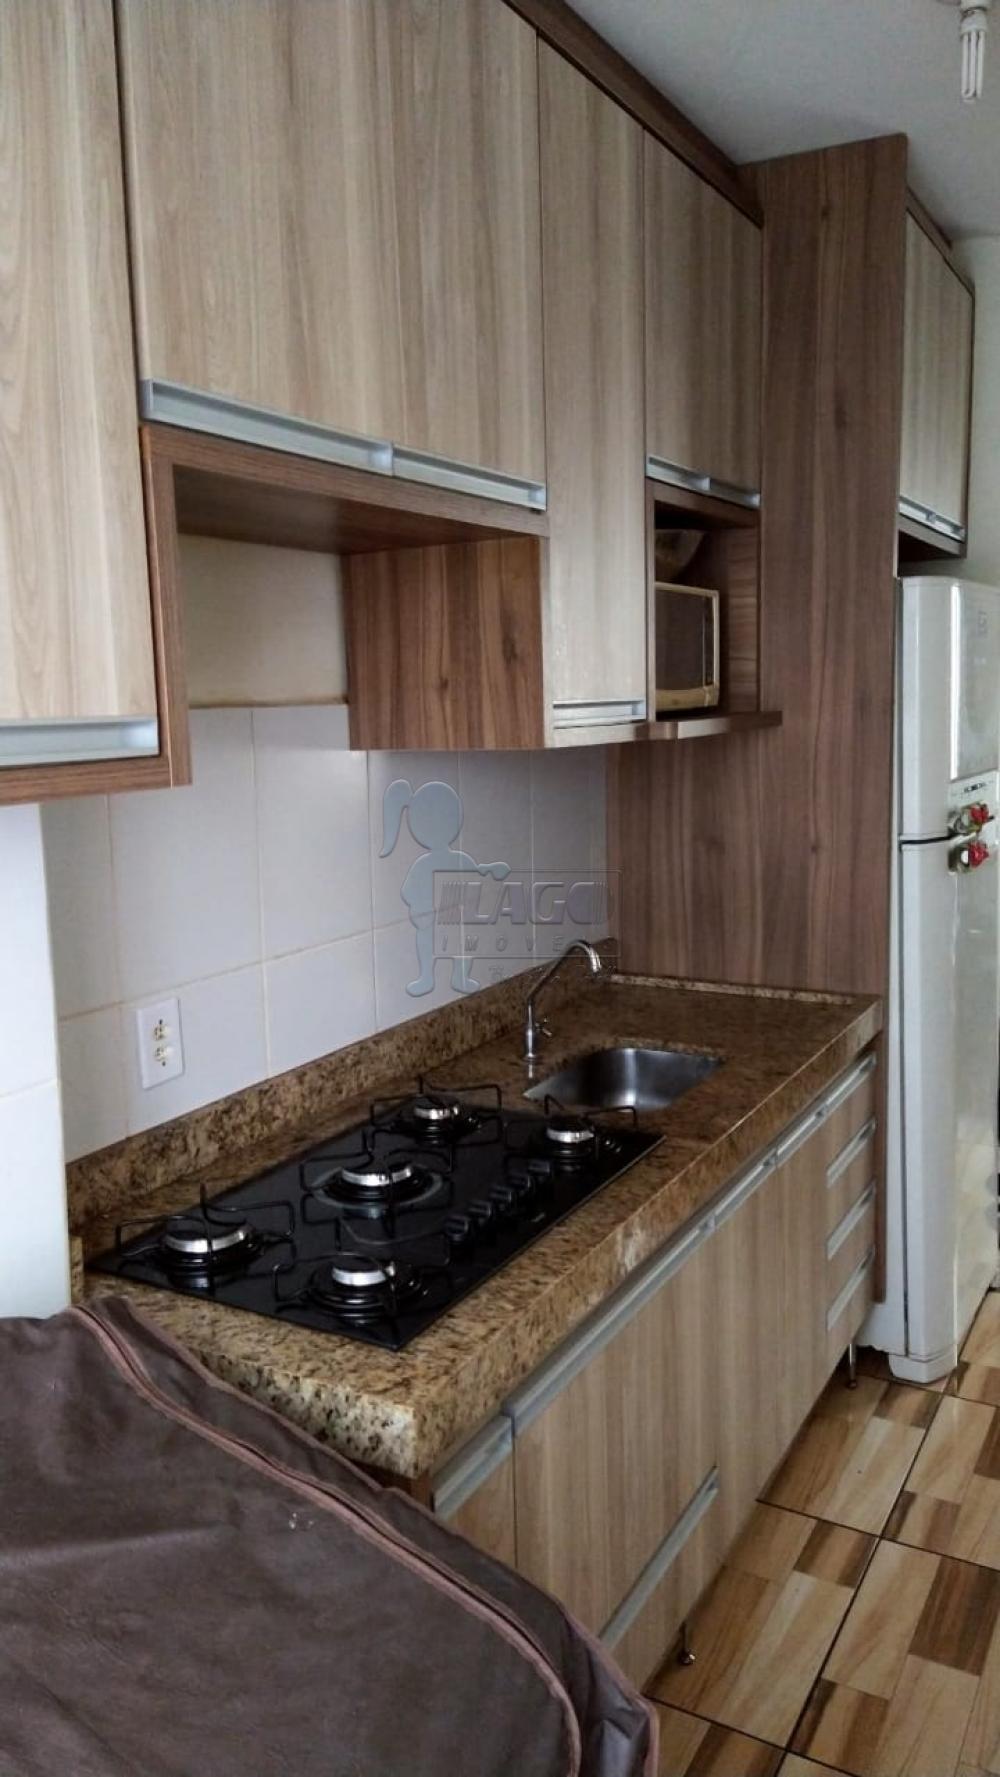 Comprar Apartamento / Padrão em Ribeirão Preto R$ 130.000,00 - Foto 6